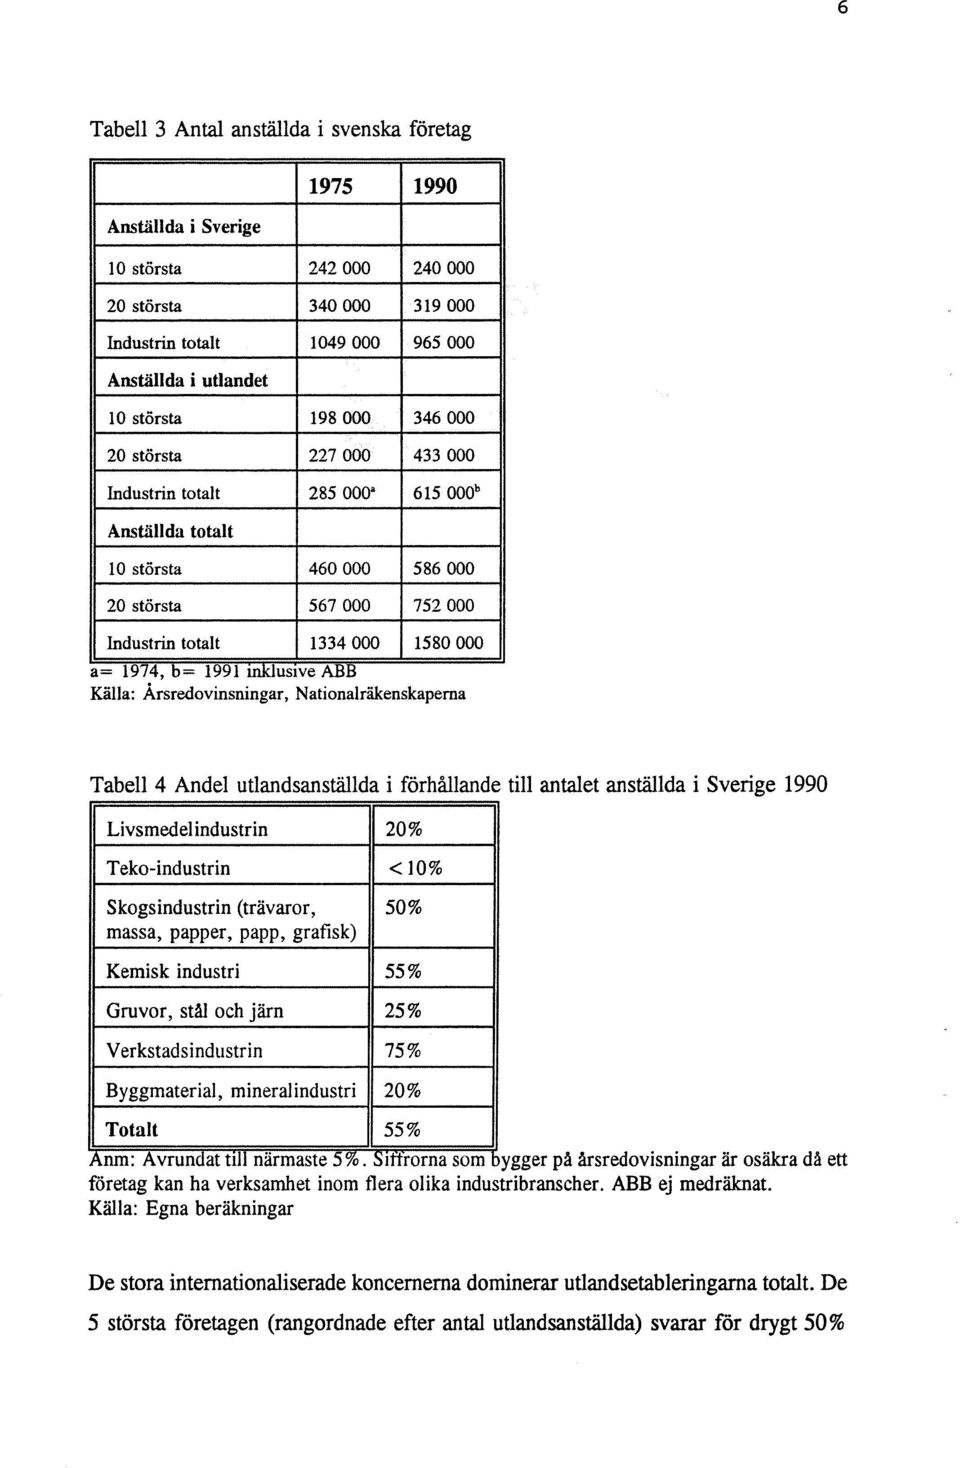 Källa: Ärsredovinsningar, Nationalräkenskapema Tabell 4 Andel utlandsanställda i förhållande till antalet anställda i Sverige 1990 Livsmedel industrin 20% Teko-ind ustrin <10% Skogsindustrin